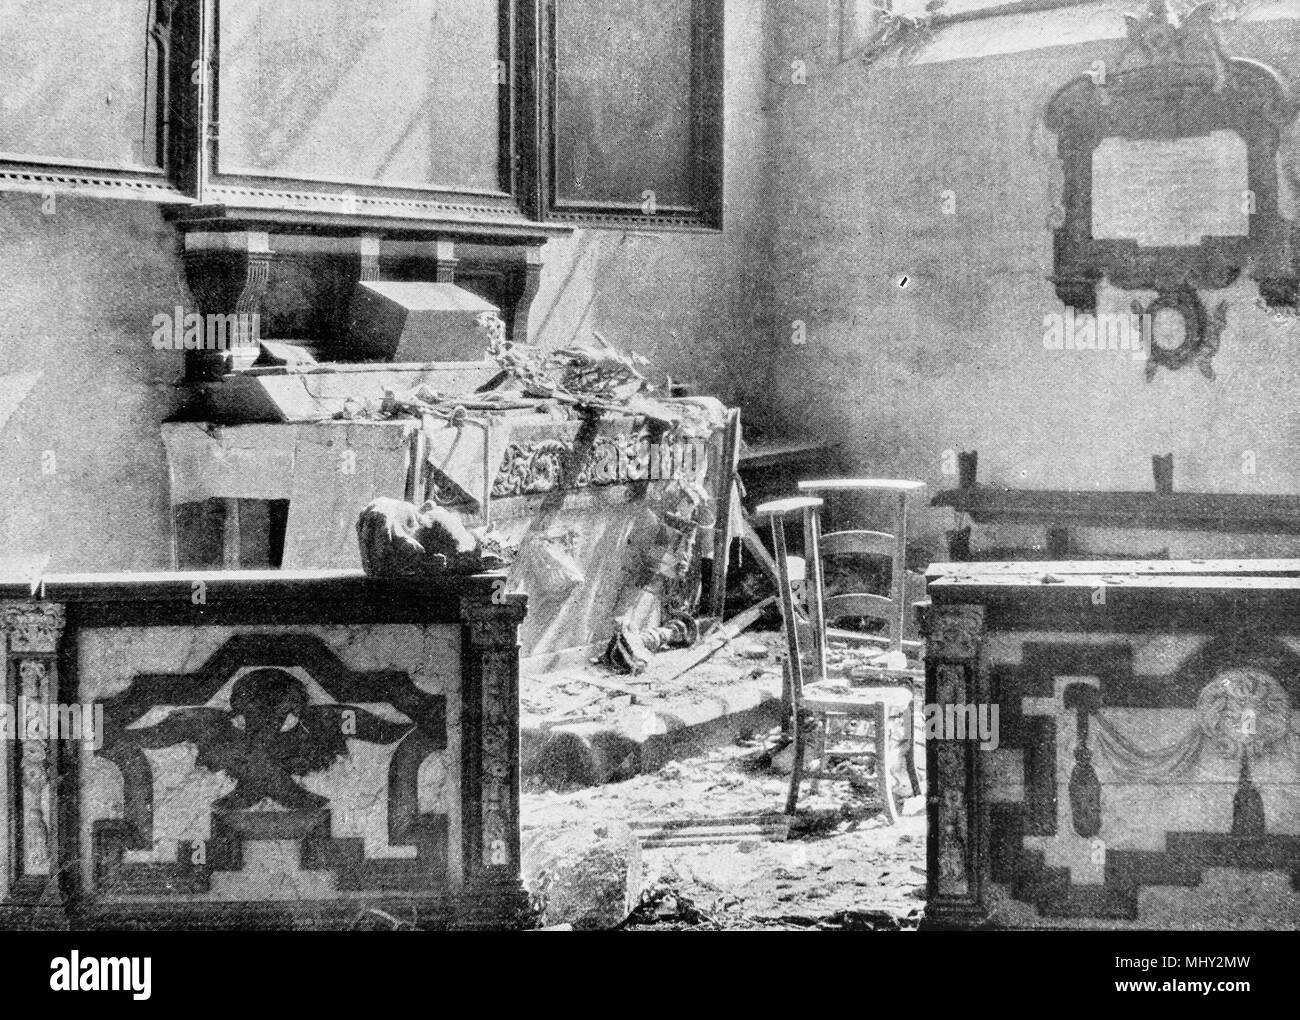 Ruines de l'église Notre-Dame de Malines après une bataille, 1914, Belgique Banque D'Images